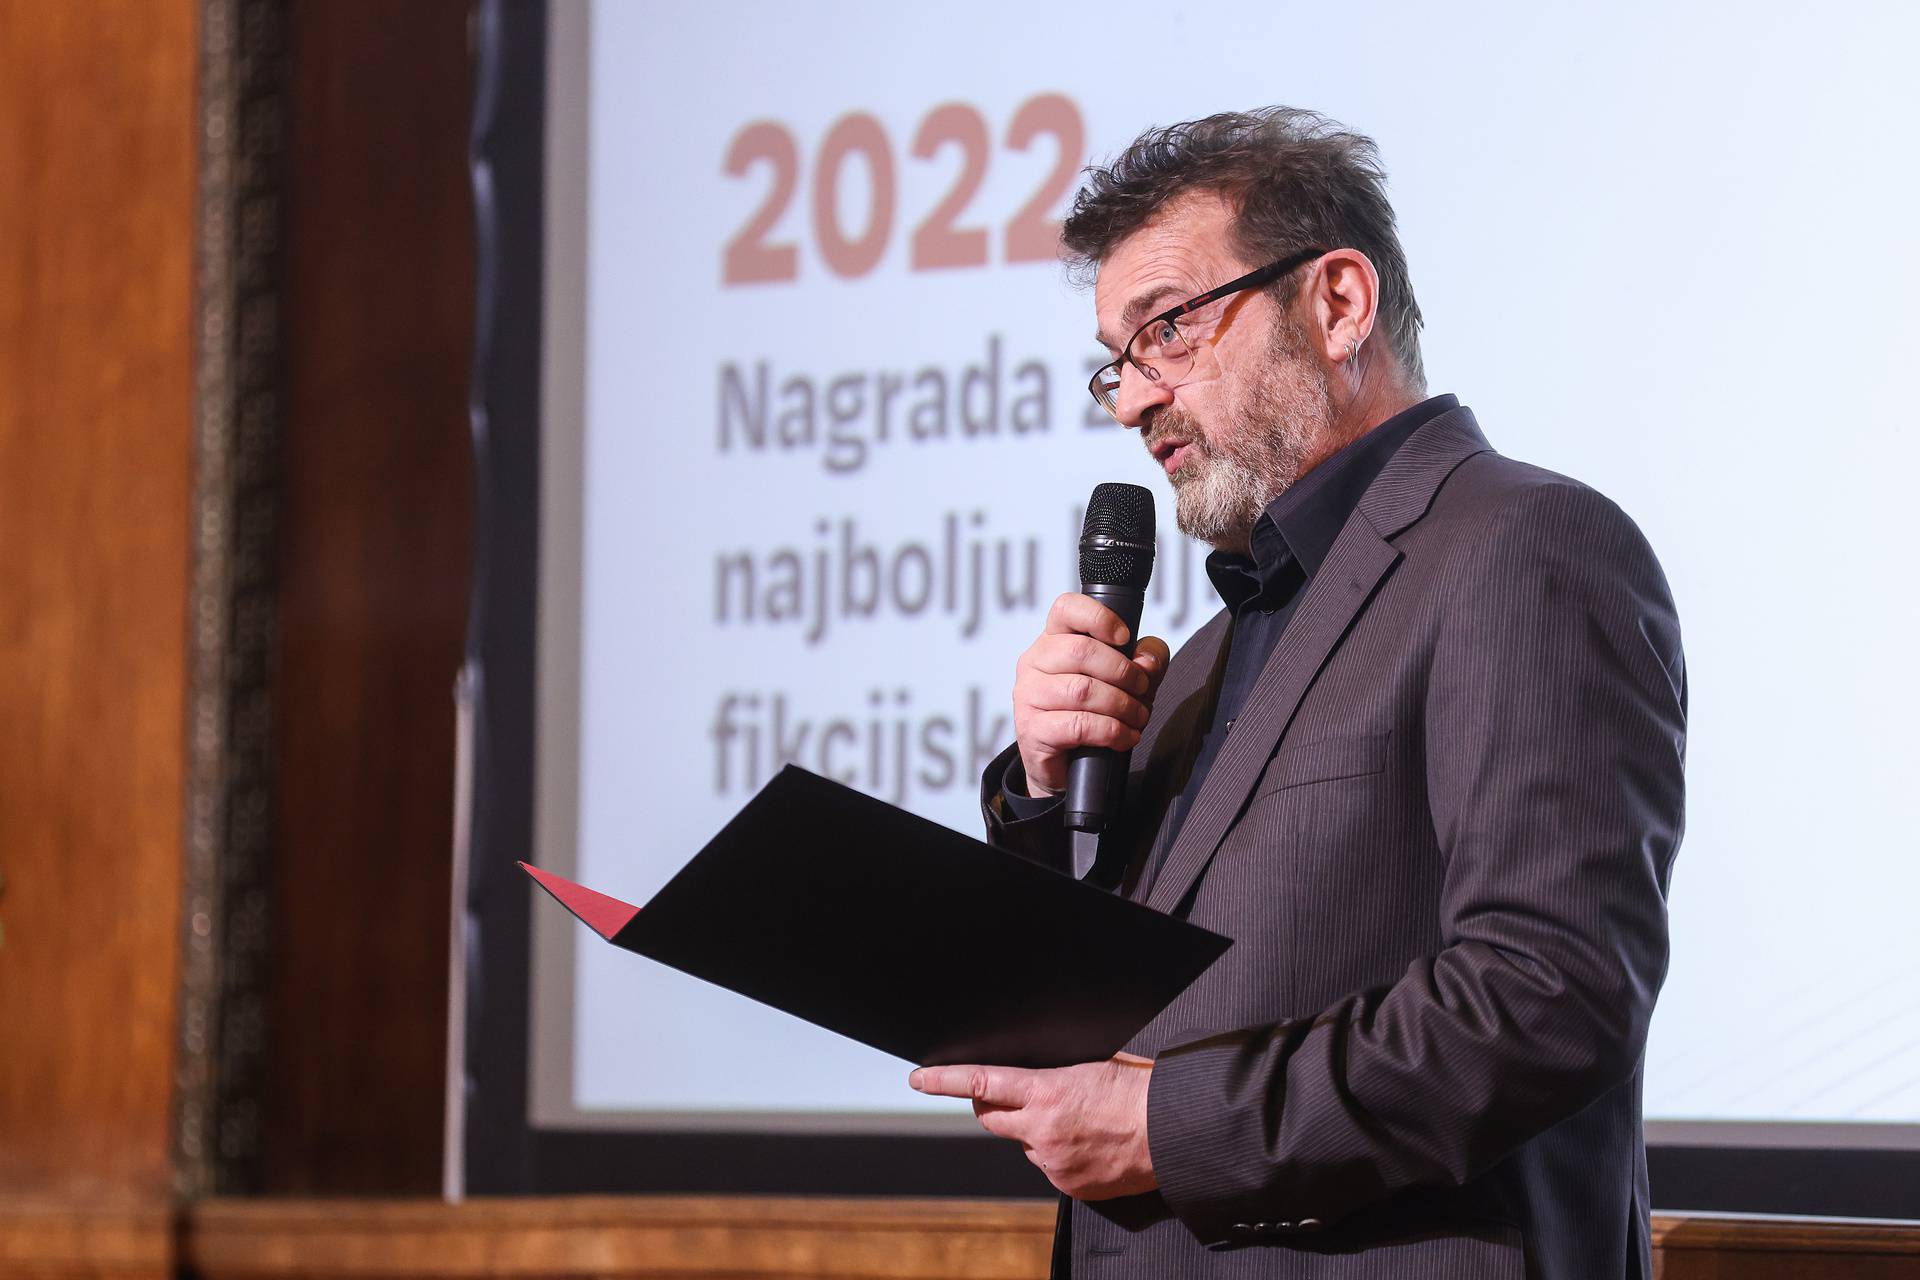 Zagreb: Miljenko Jergović dobitnik je nagrade Fric za knjigu 'Trojica za kartal'